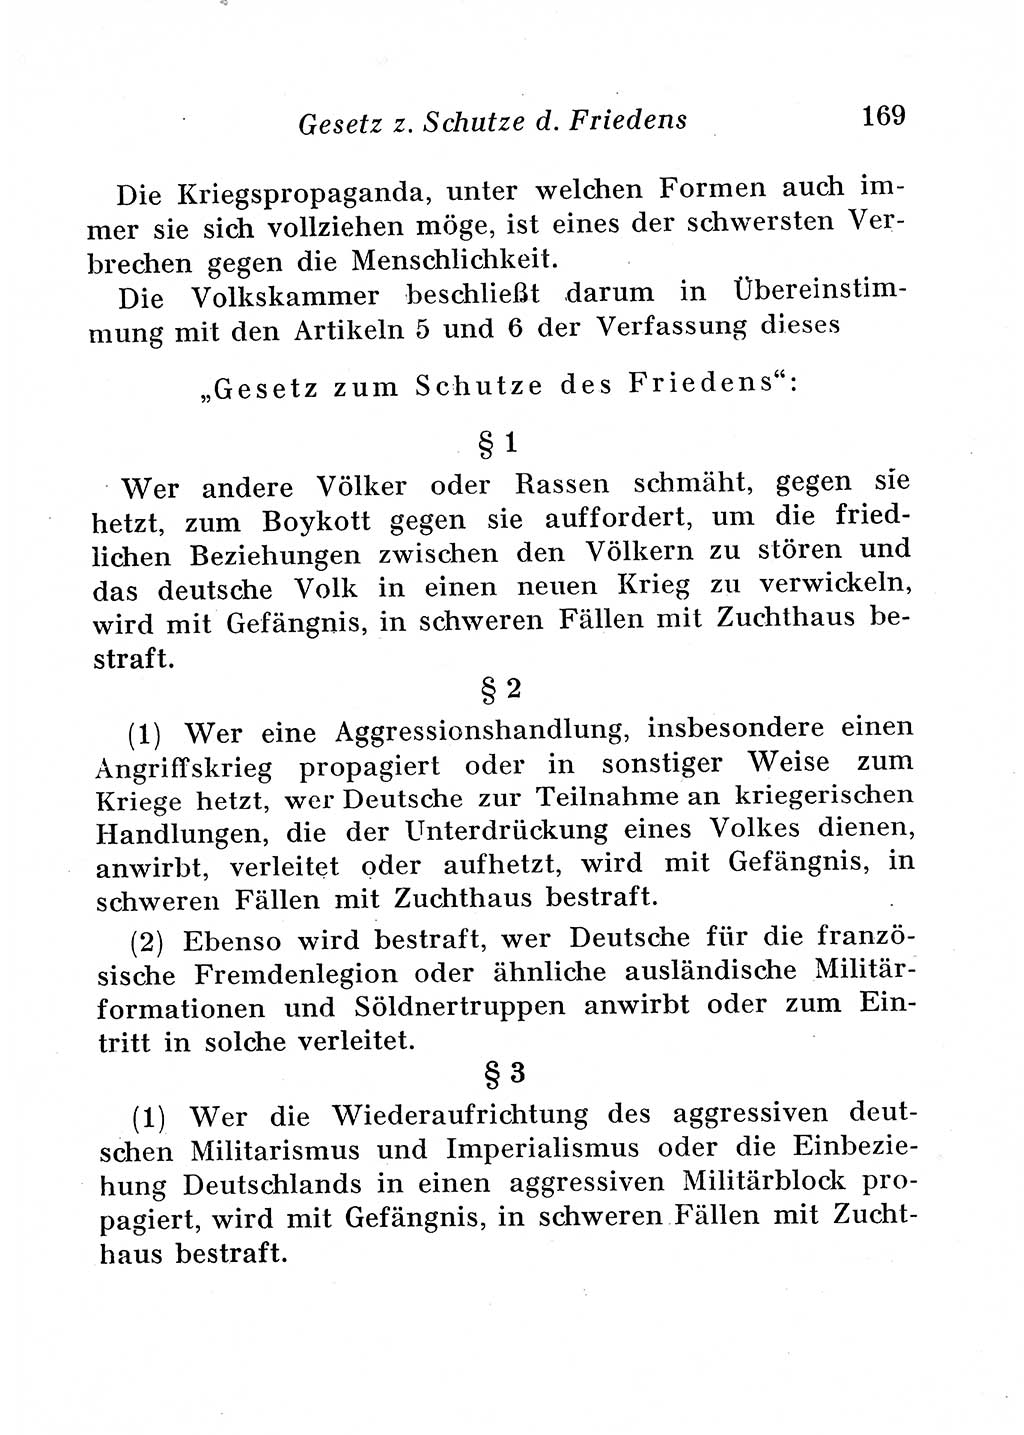 Staats- und verwaltungsrechtliche Gesetze der Deutschen Demokratischen Republik (DDR) 1958, Seite 169 (StVerwR Ges. DDR 1958, S. 169)